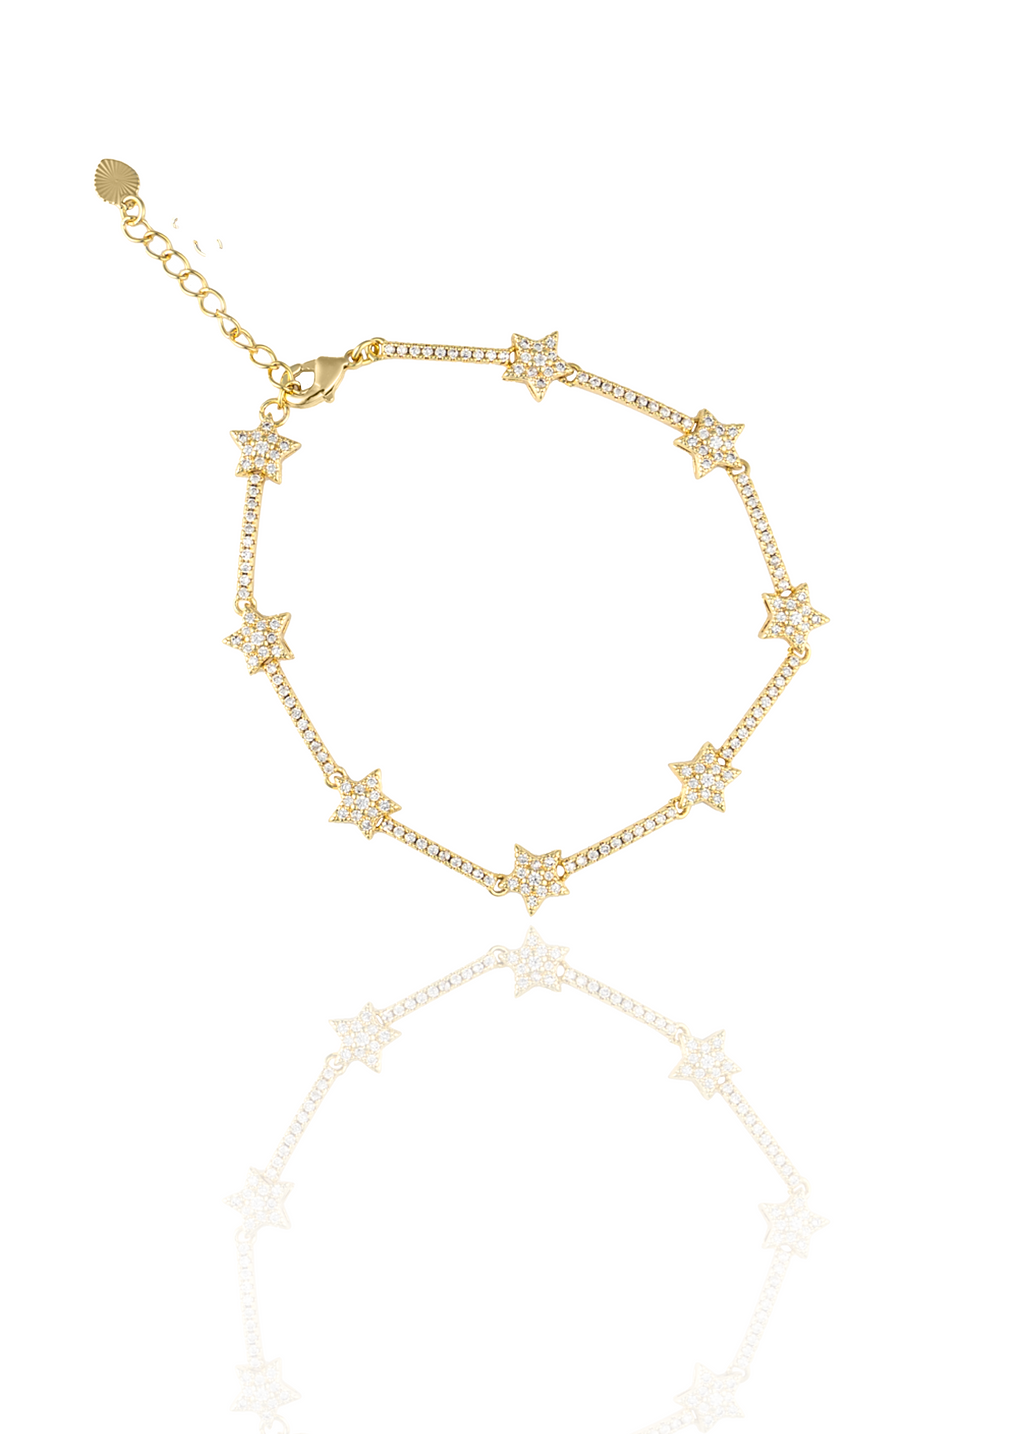 Star Necklace / Bracelet With CZ Cubic Zirconia Stones (G157)